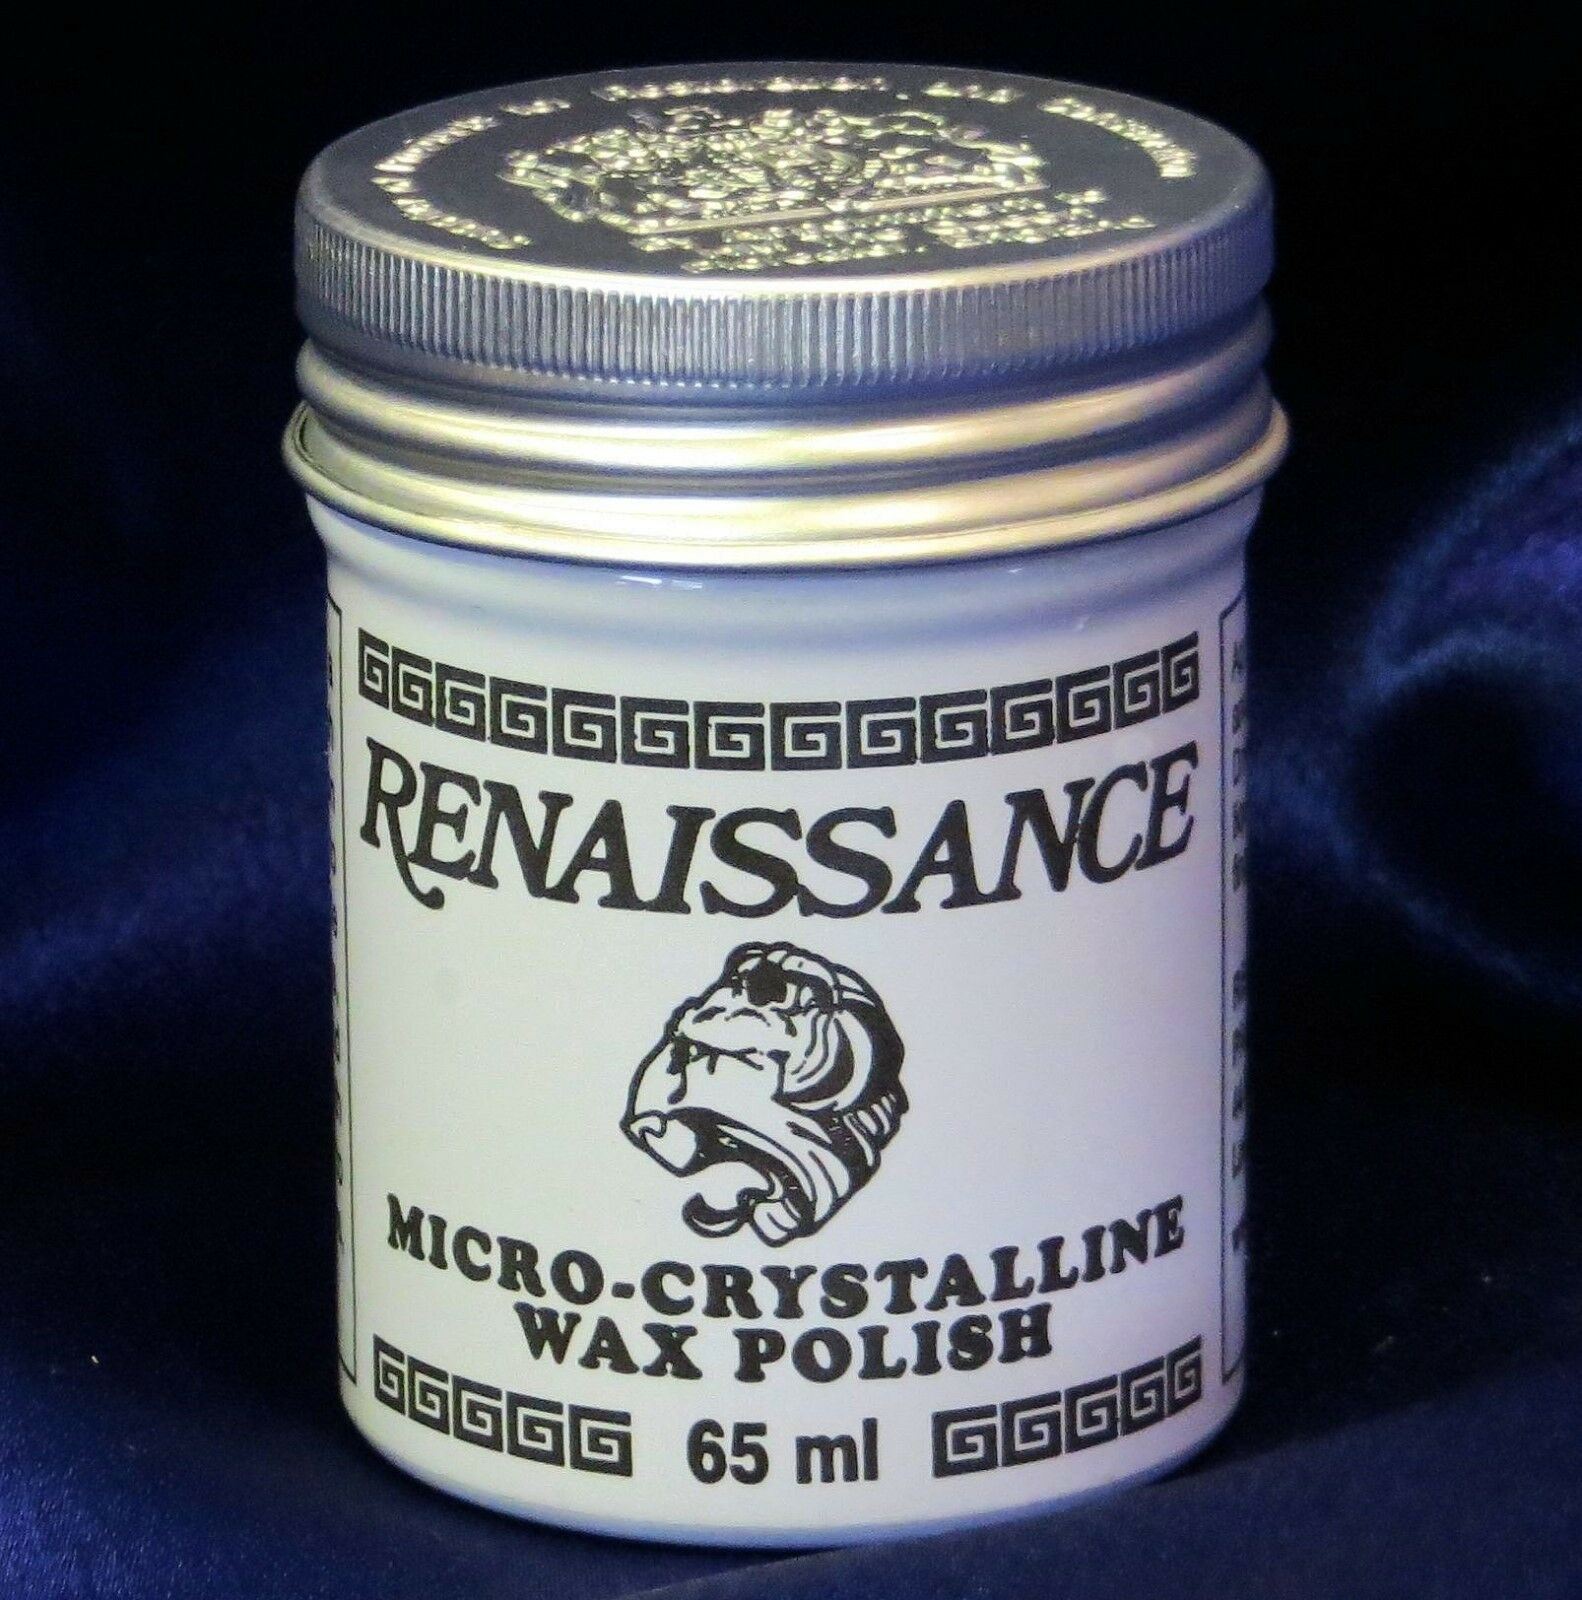 Renaissance Wax - Micro-crystalline Wax Polish - 65ml (2.25oz) Can